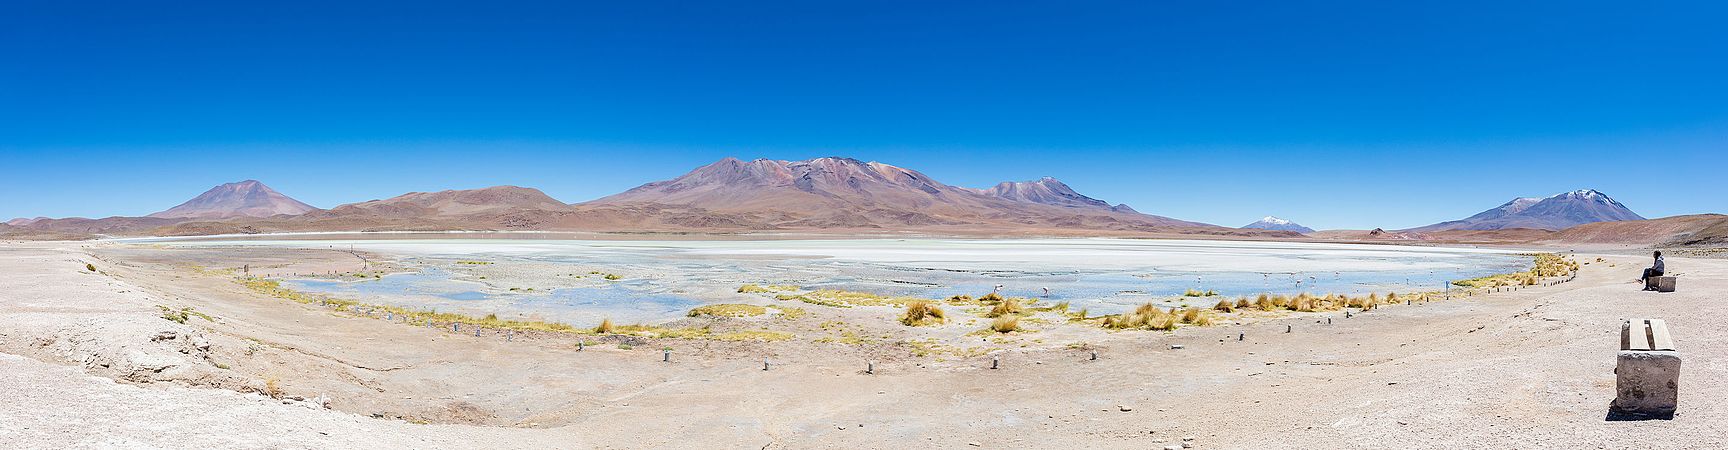 图为玻利维亚西南部北利佩斯省埃迪翁達湖全景。湖泊海拔4121米，面积3平方公里